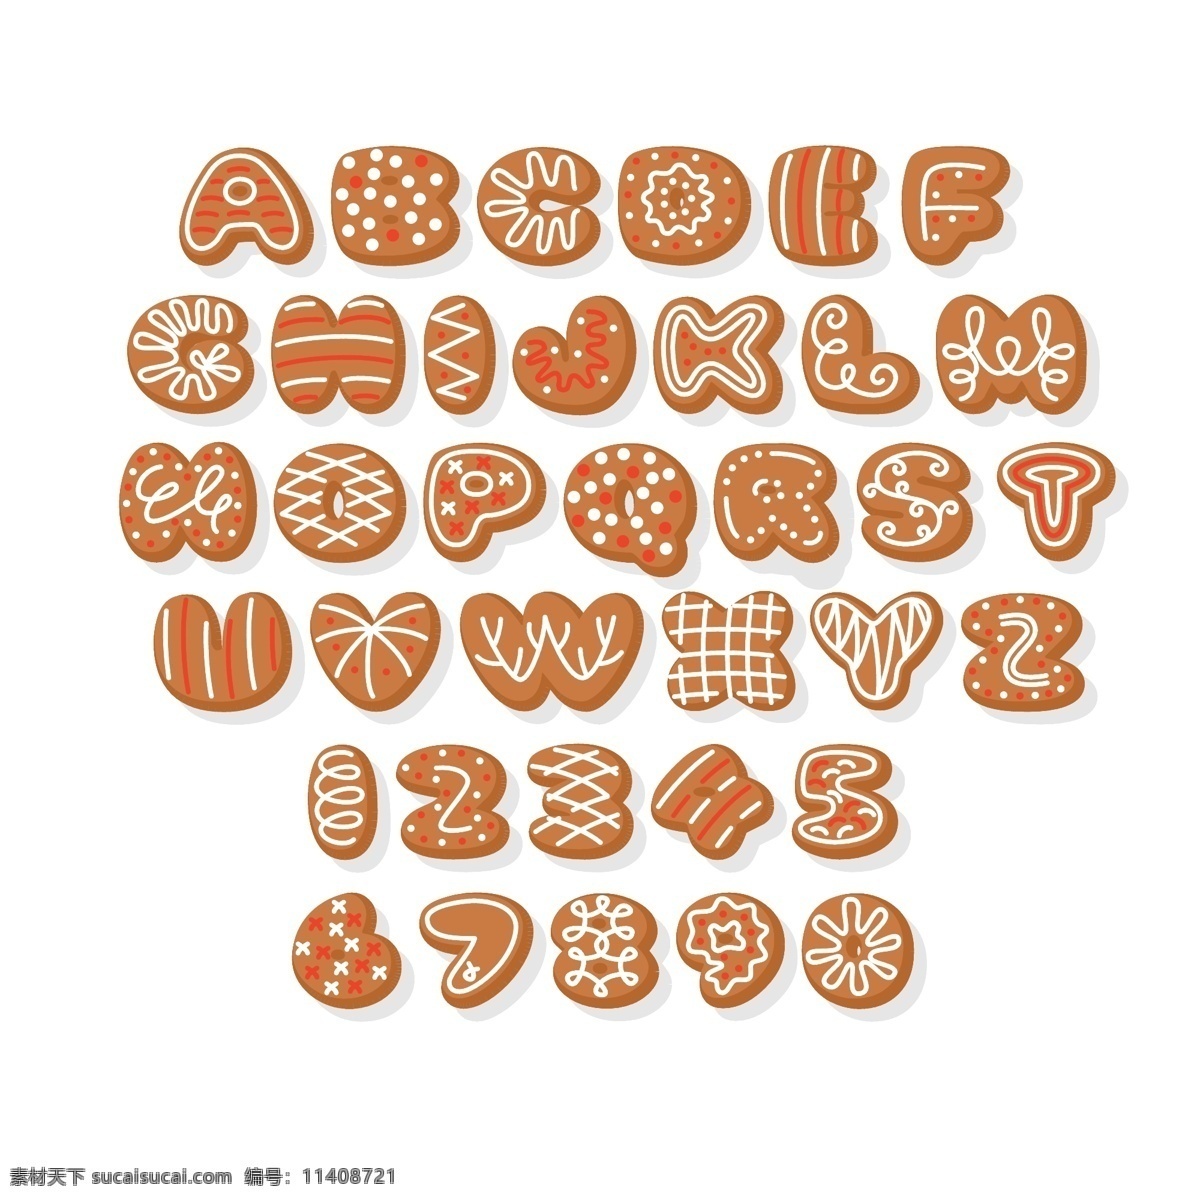 字母饼干图片 姜饼 圣诞食物 圣诞饰品 圣诞节 美食 饼干 点心 童话 插图 插画 ai矢量